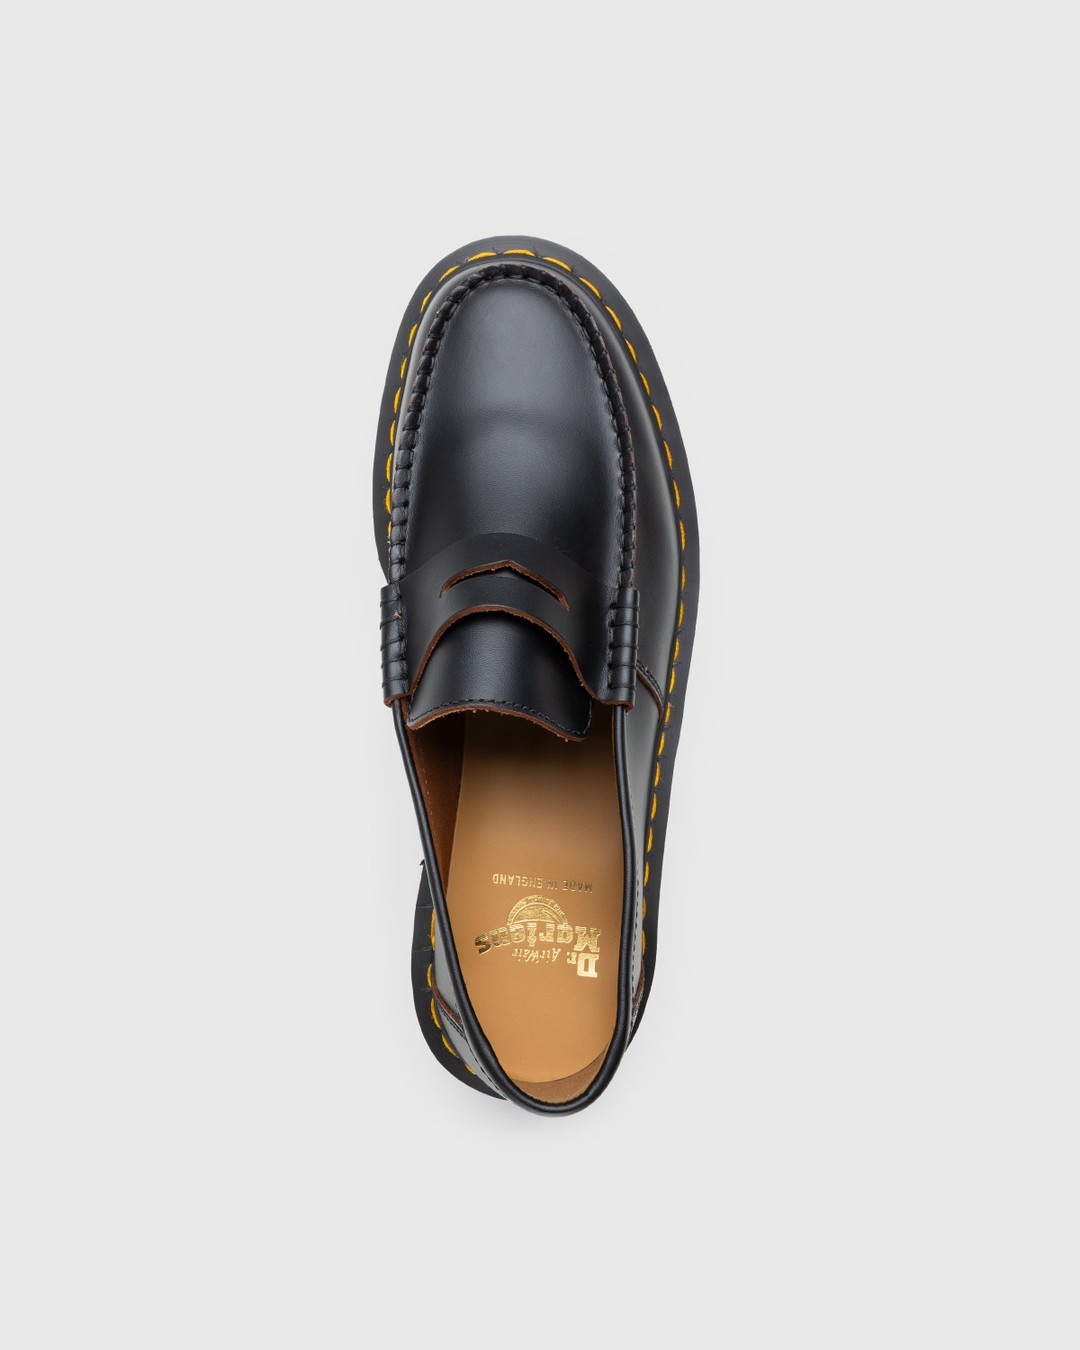 Dr. Martens – Penton Bex Quilon Leather Loafers Black - Shoes - Black - Image 5